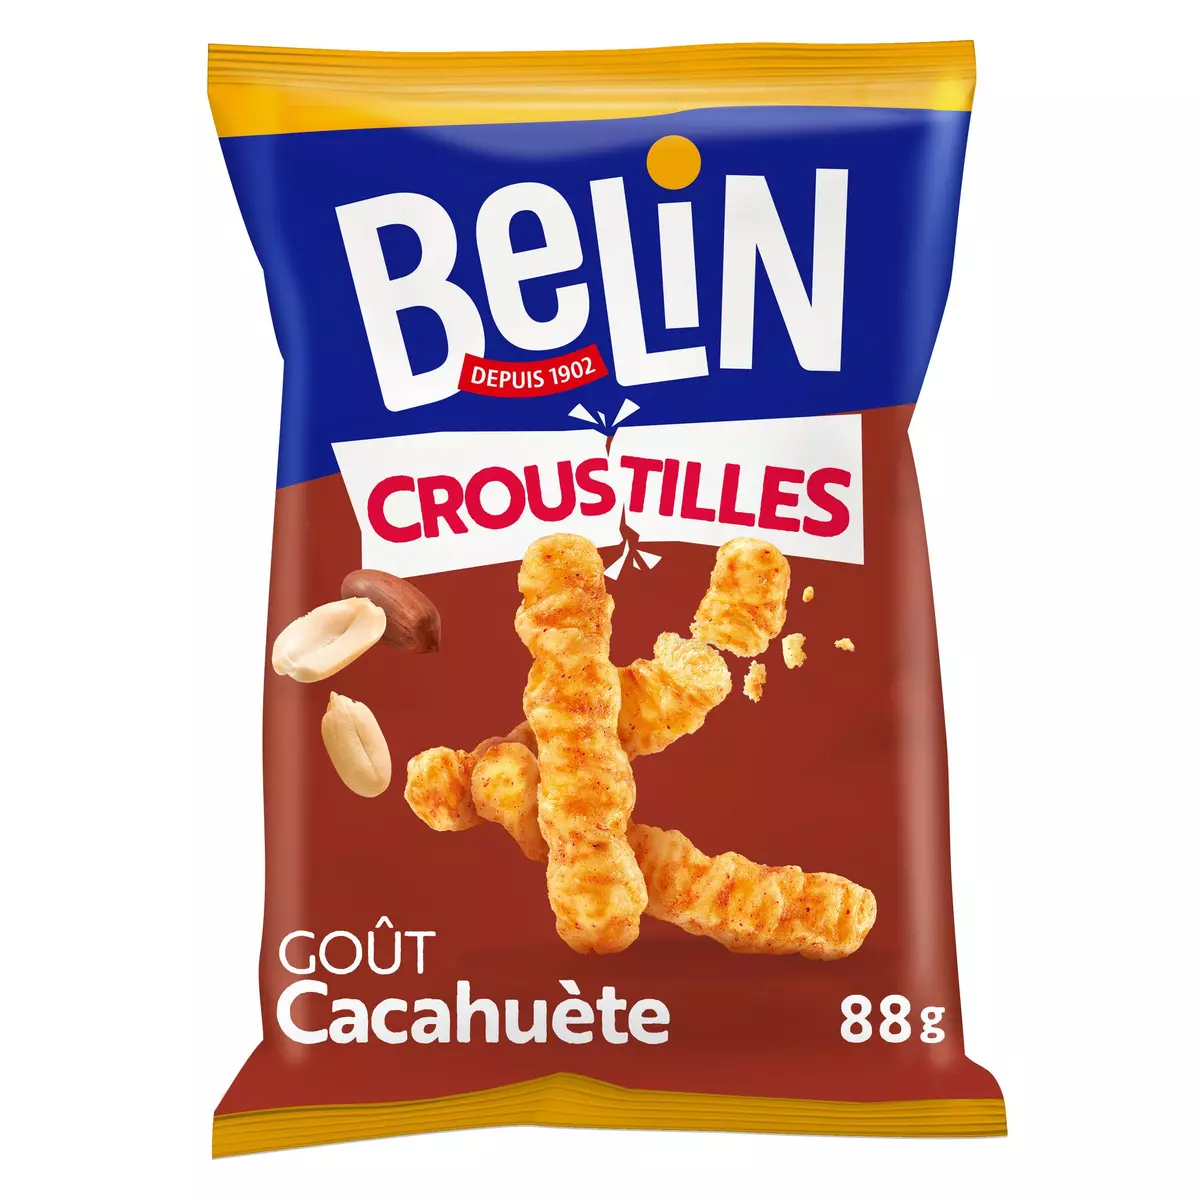 BELIN Biscuits salés croustilles aux cacahuètes 88g